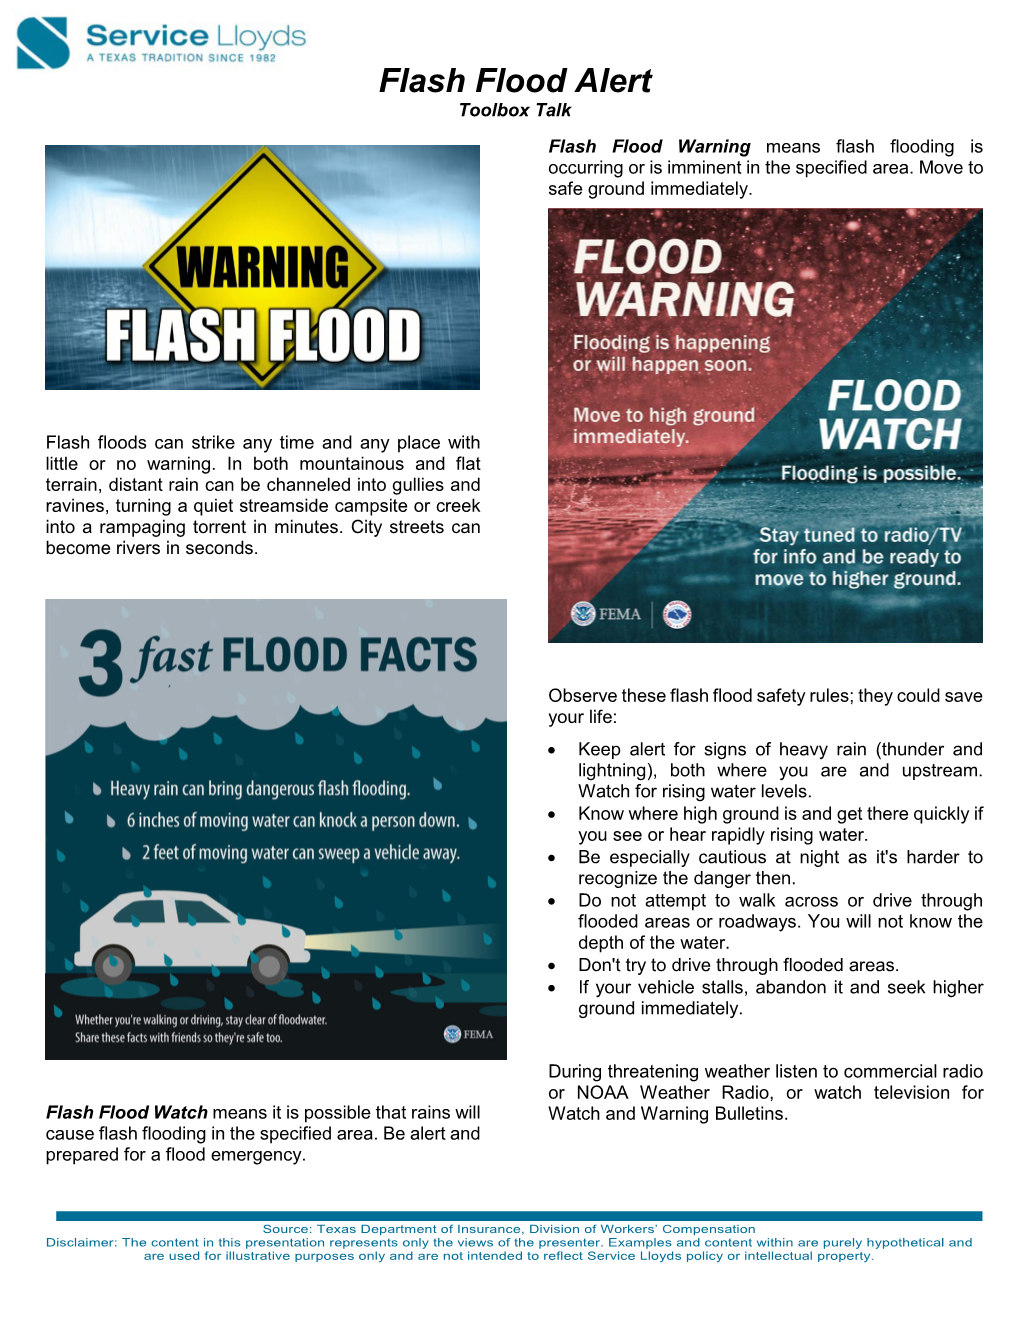 Flash Flood Alert Toolbox Talk